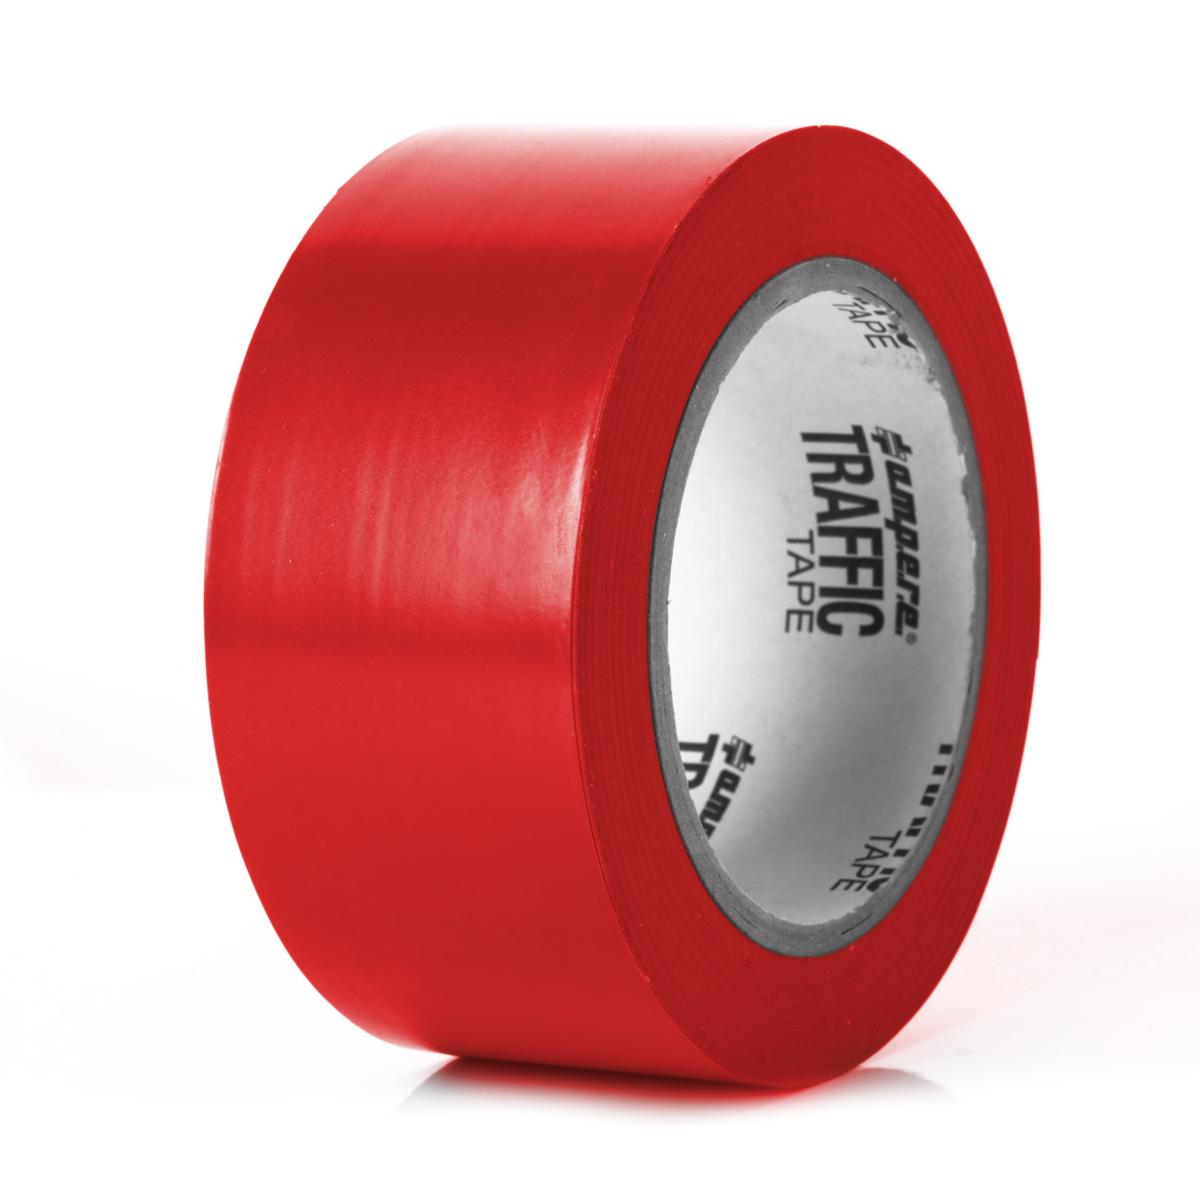 Bodenmarkierungsband Traffic Tape® Standard - Dicke 0,15 mm, Breite 50 mm, diverse Farben